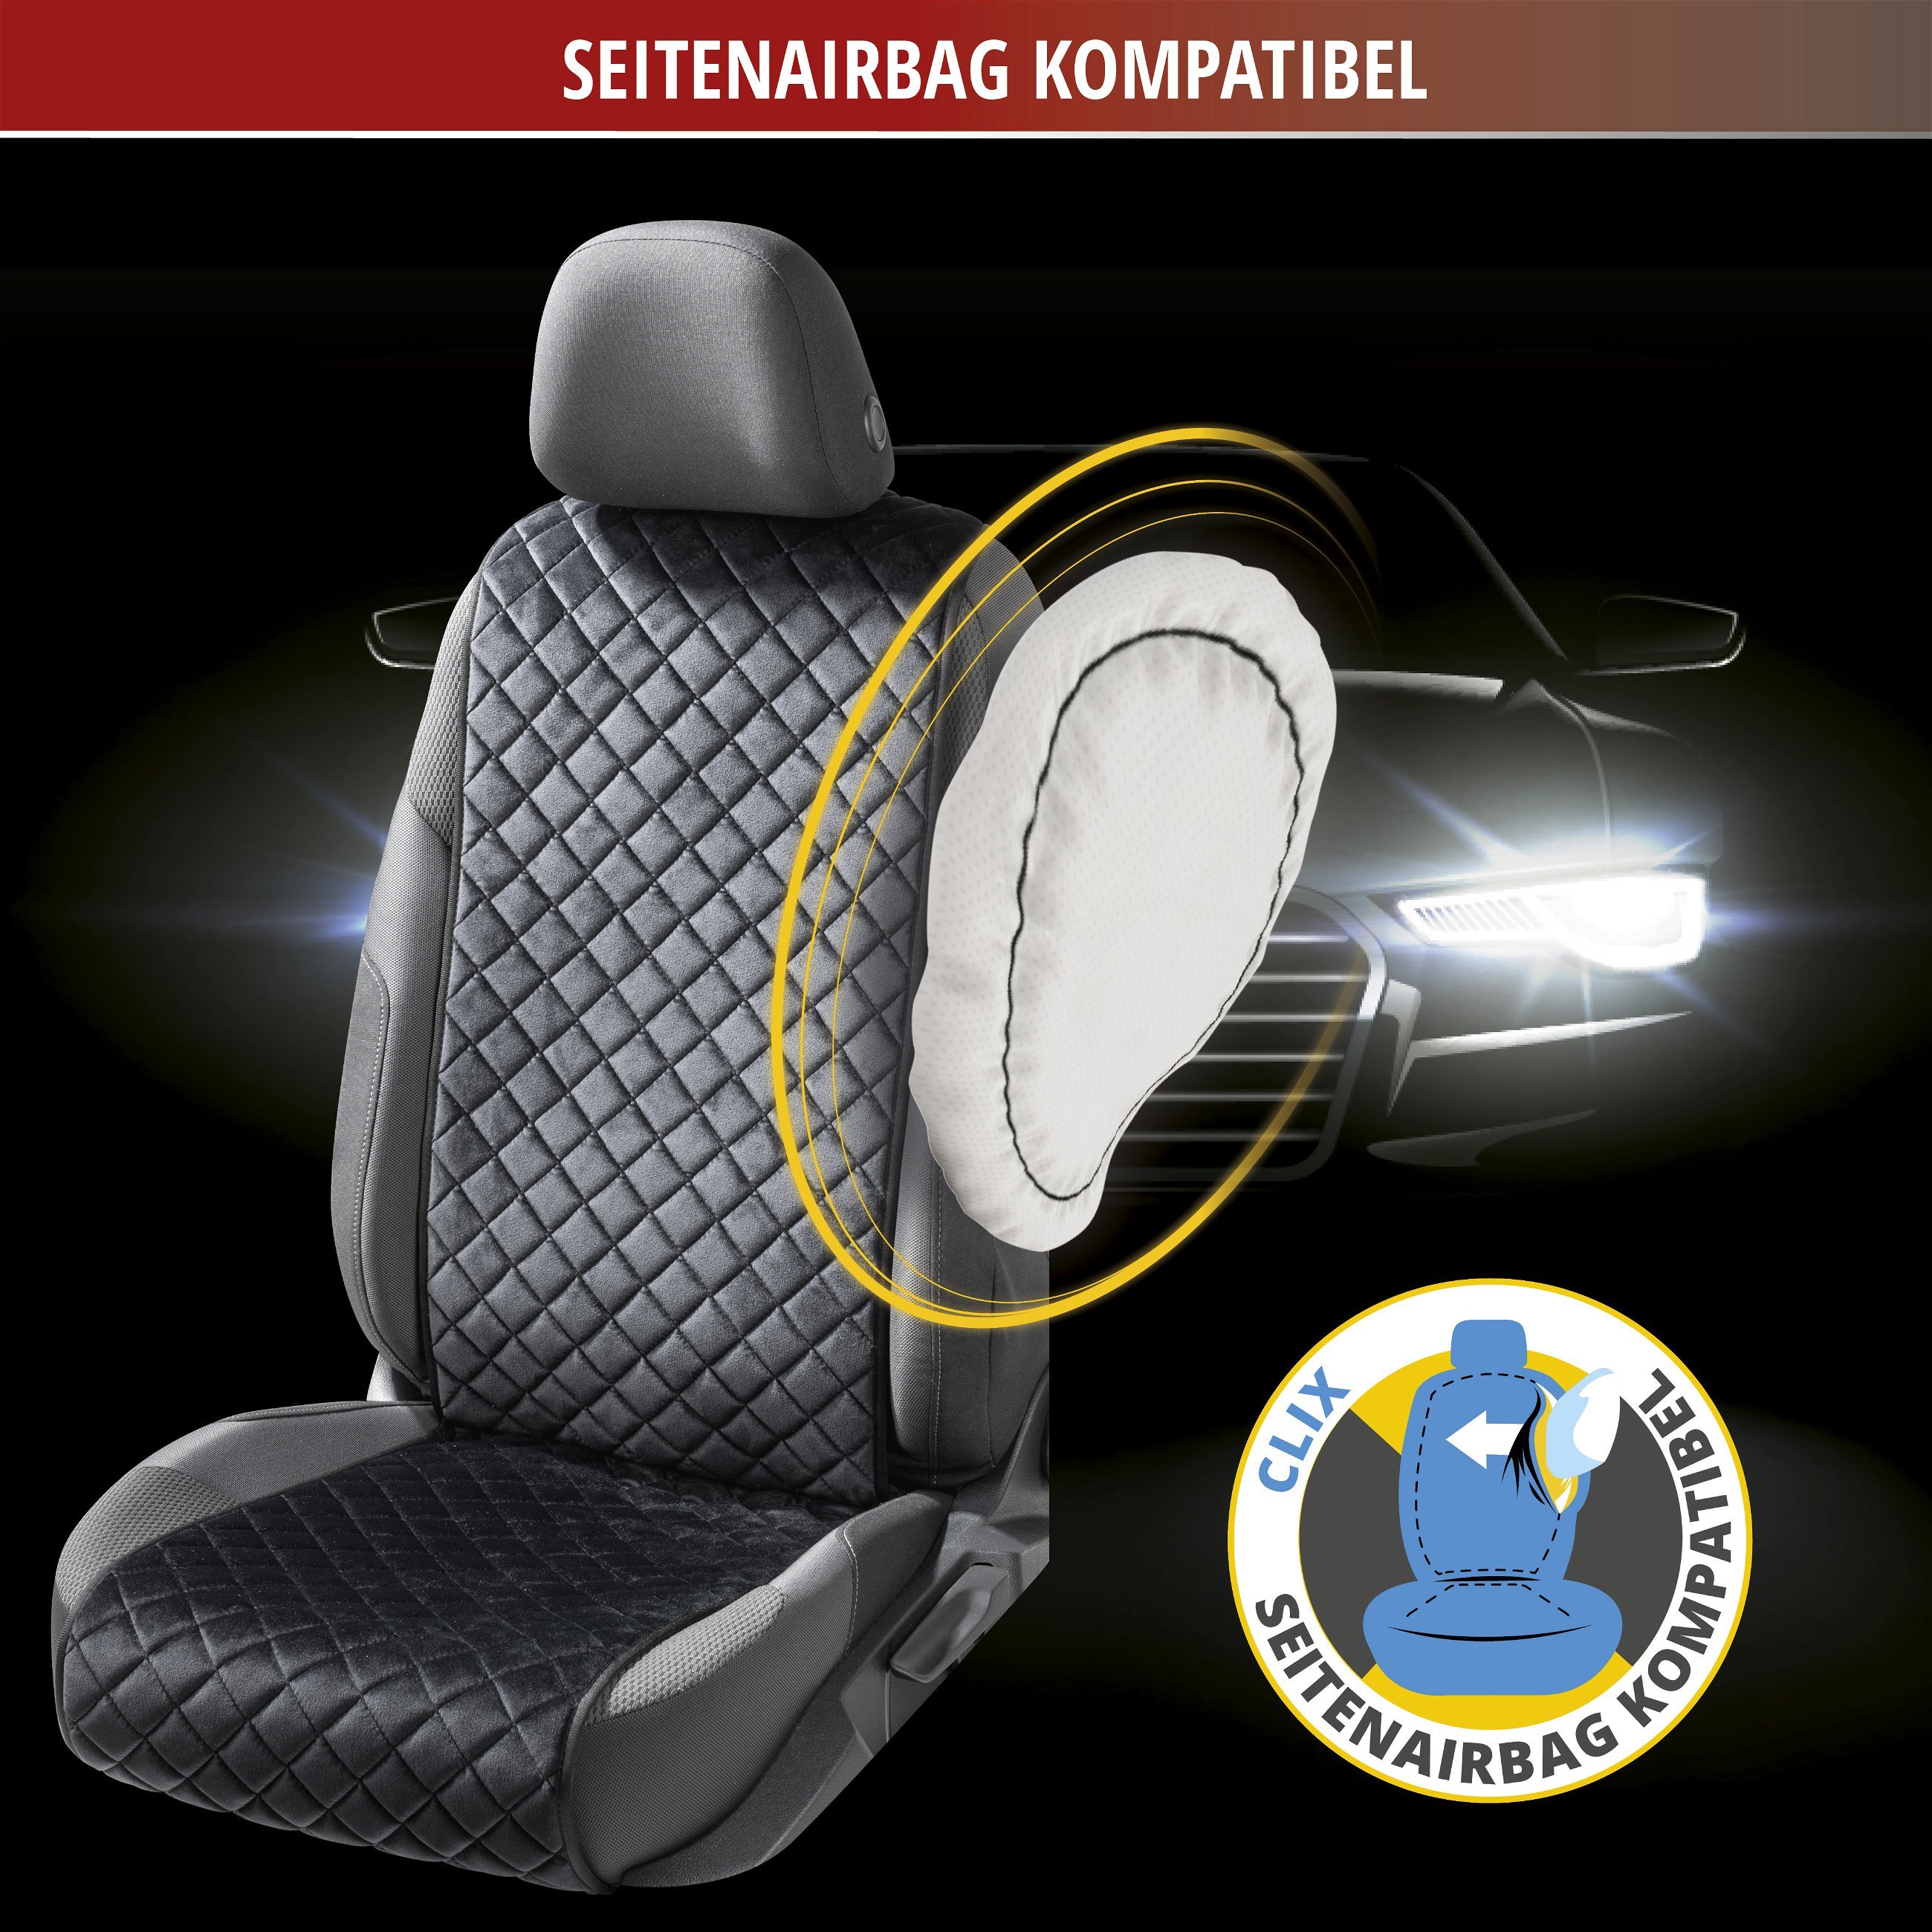 PKW-Sitzaufleger Comfortline Luxor inkl. Anti-Rutsch-Beschichtung, Auto-Sitzauflage für 1 Vordersitz